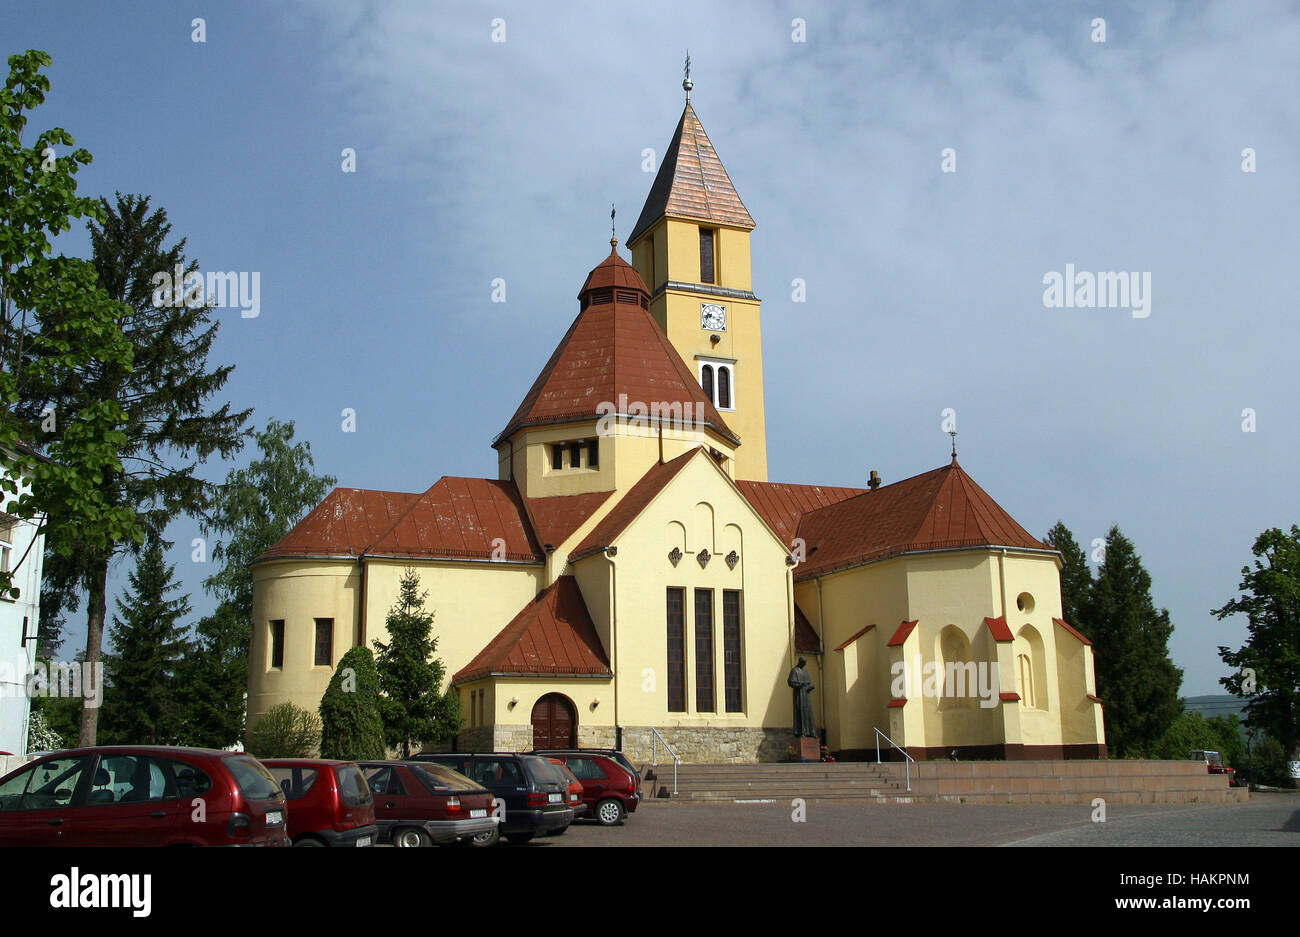 Parish church of the Holy Trinity in Krasic, Croatia Stock Photo